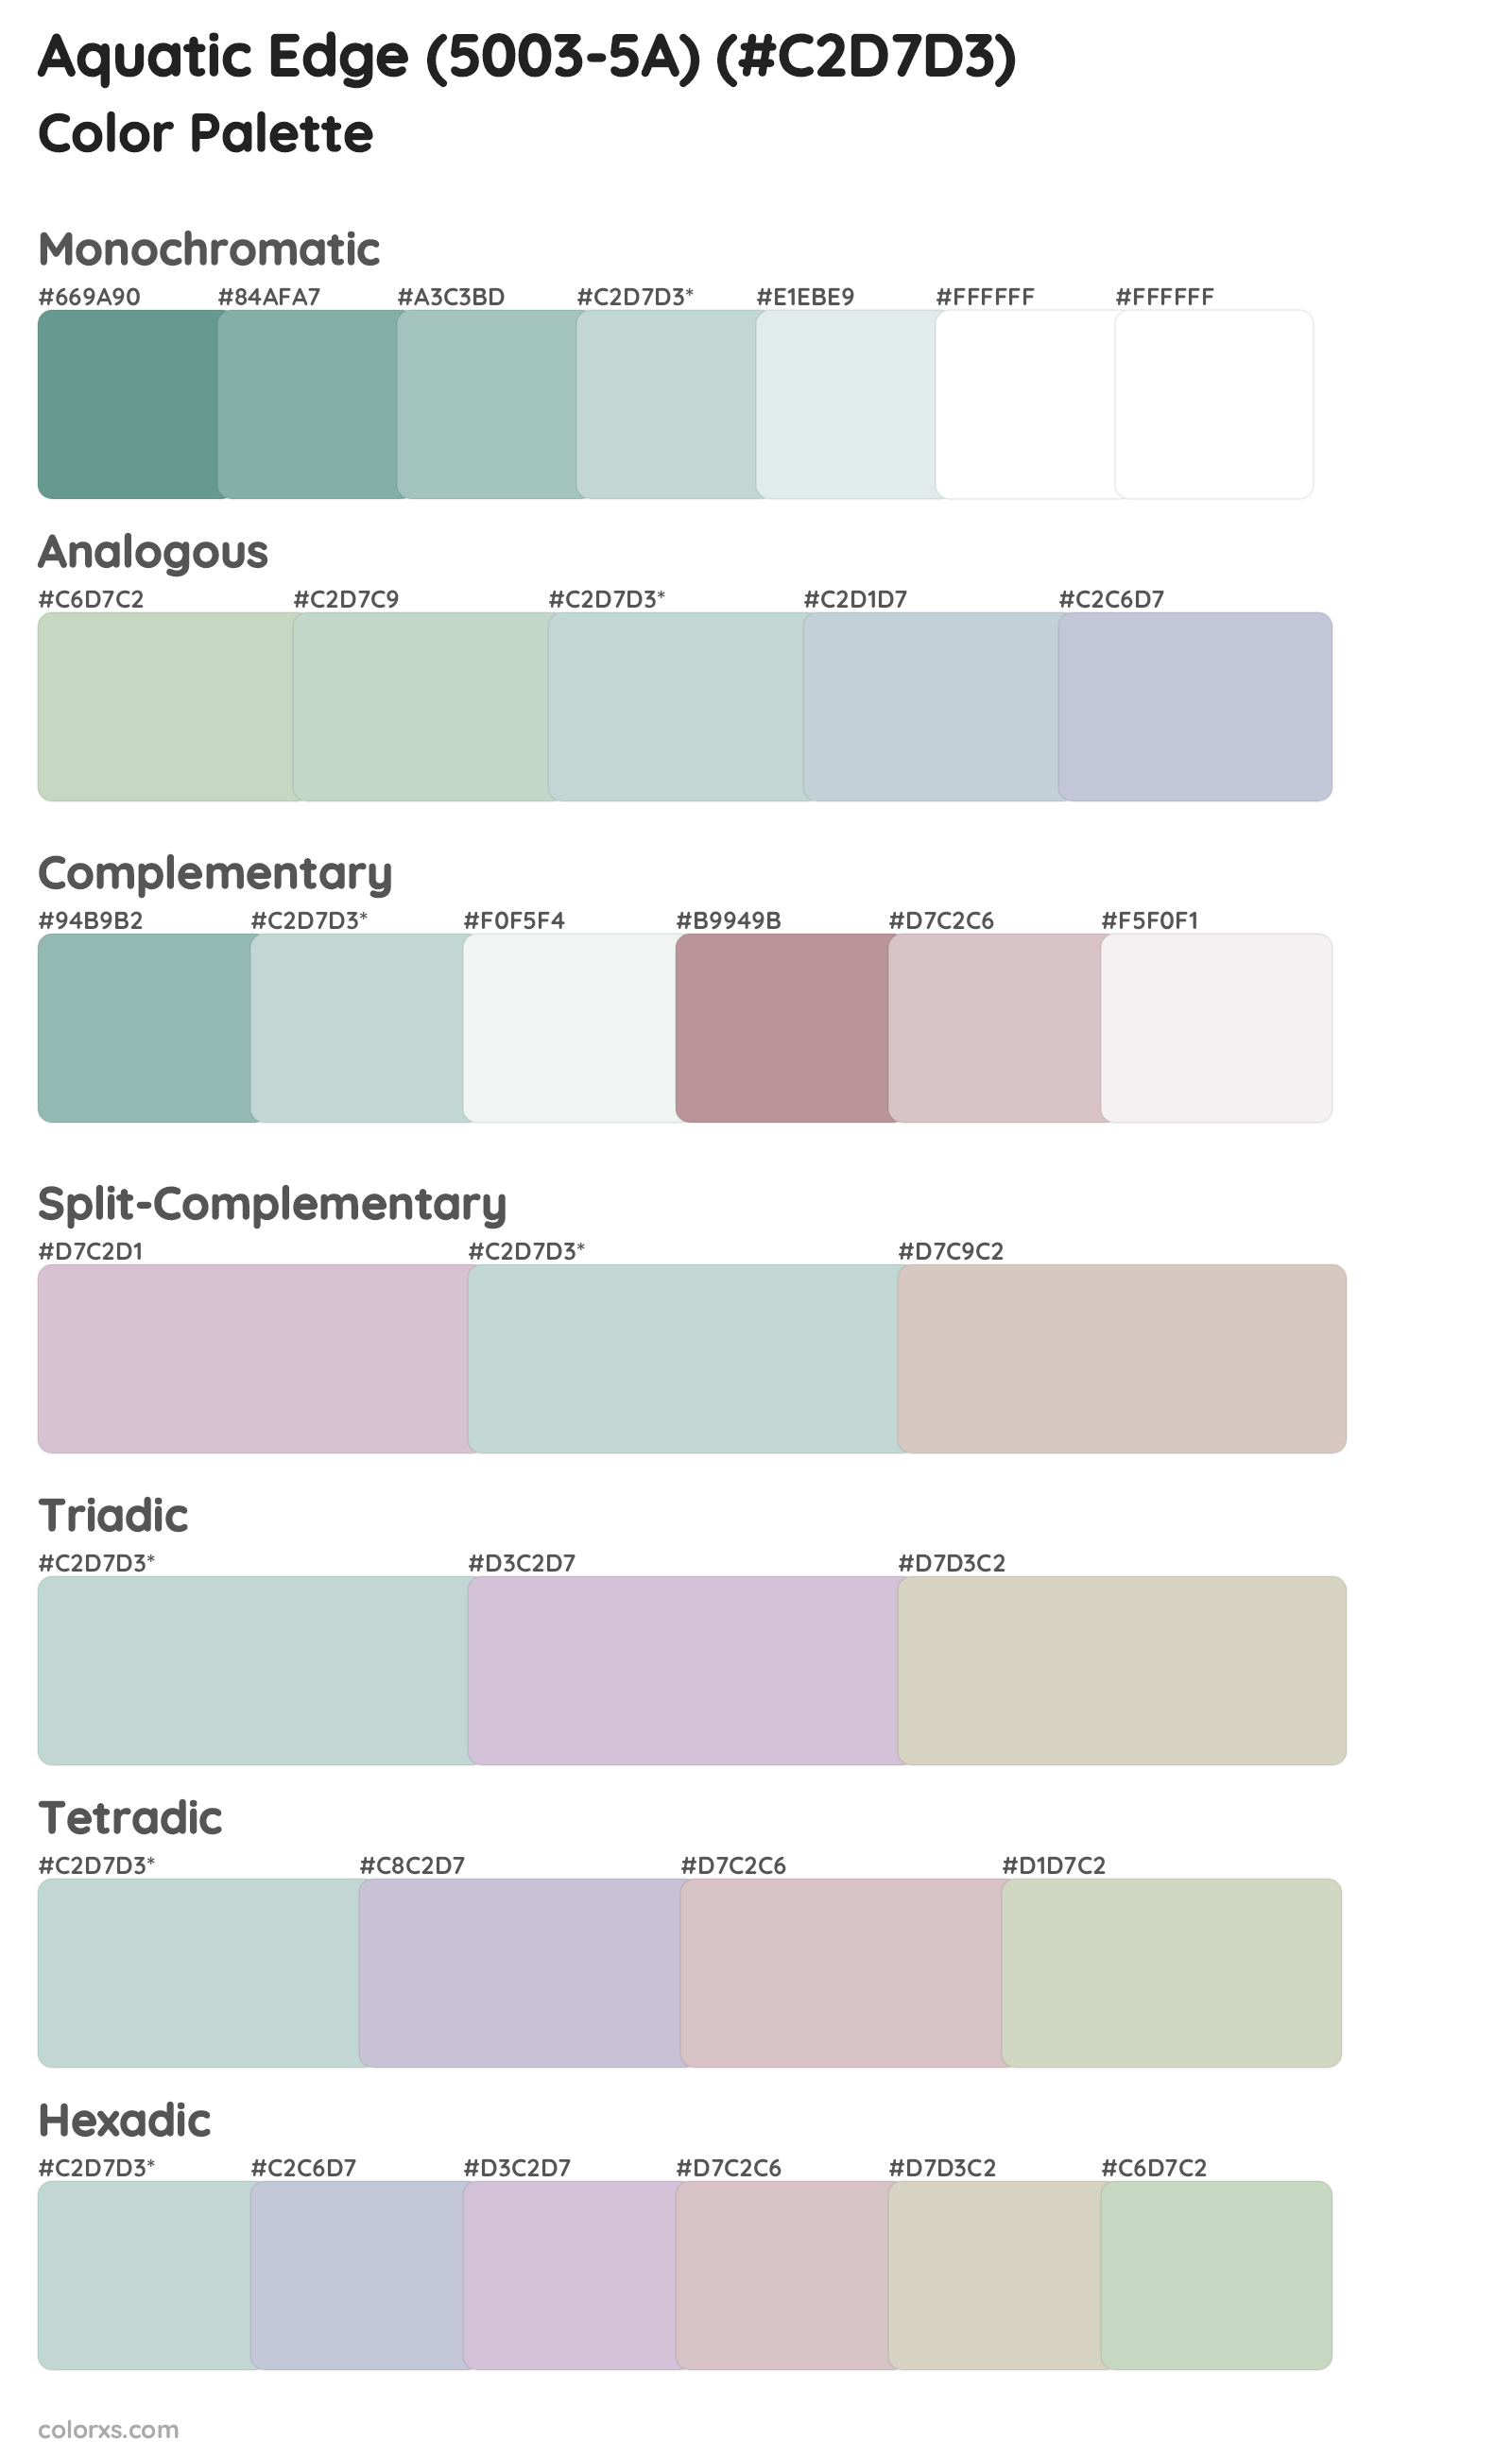 Aquatic Edge (5003-5A) Color Scheme Palettes